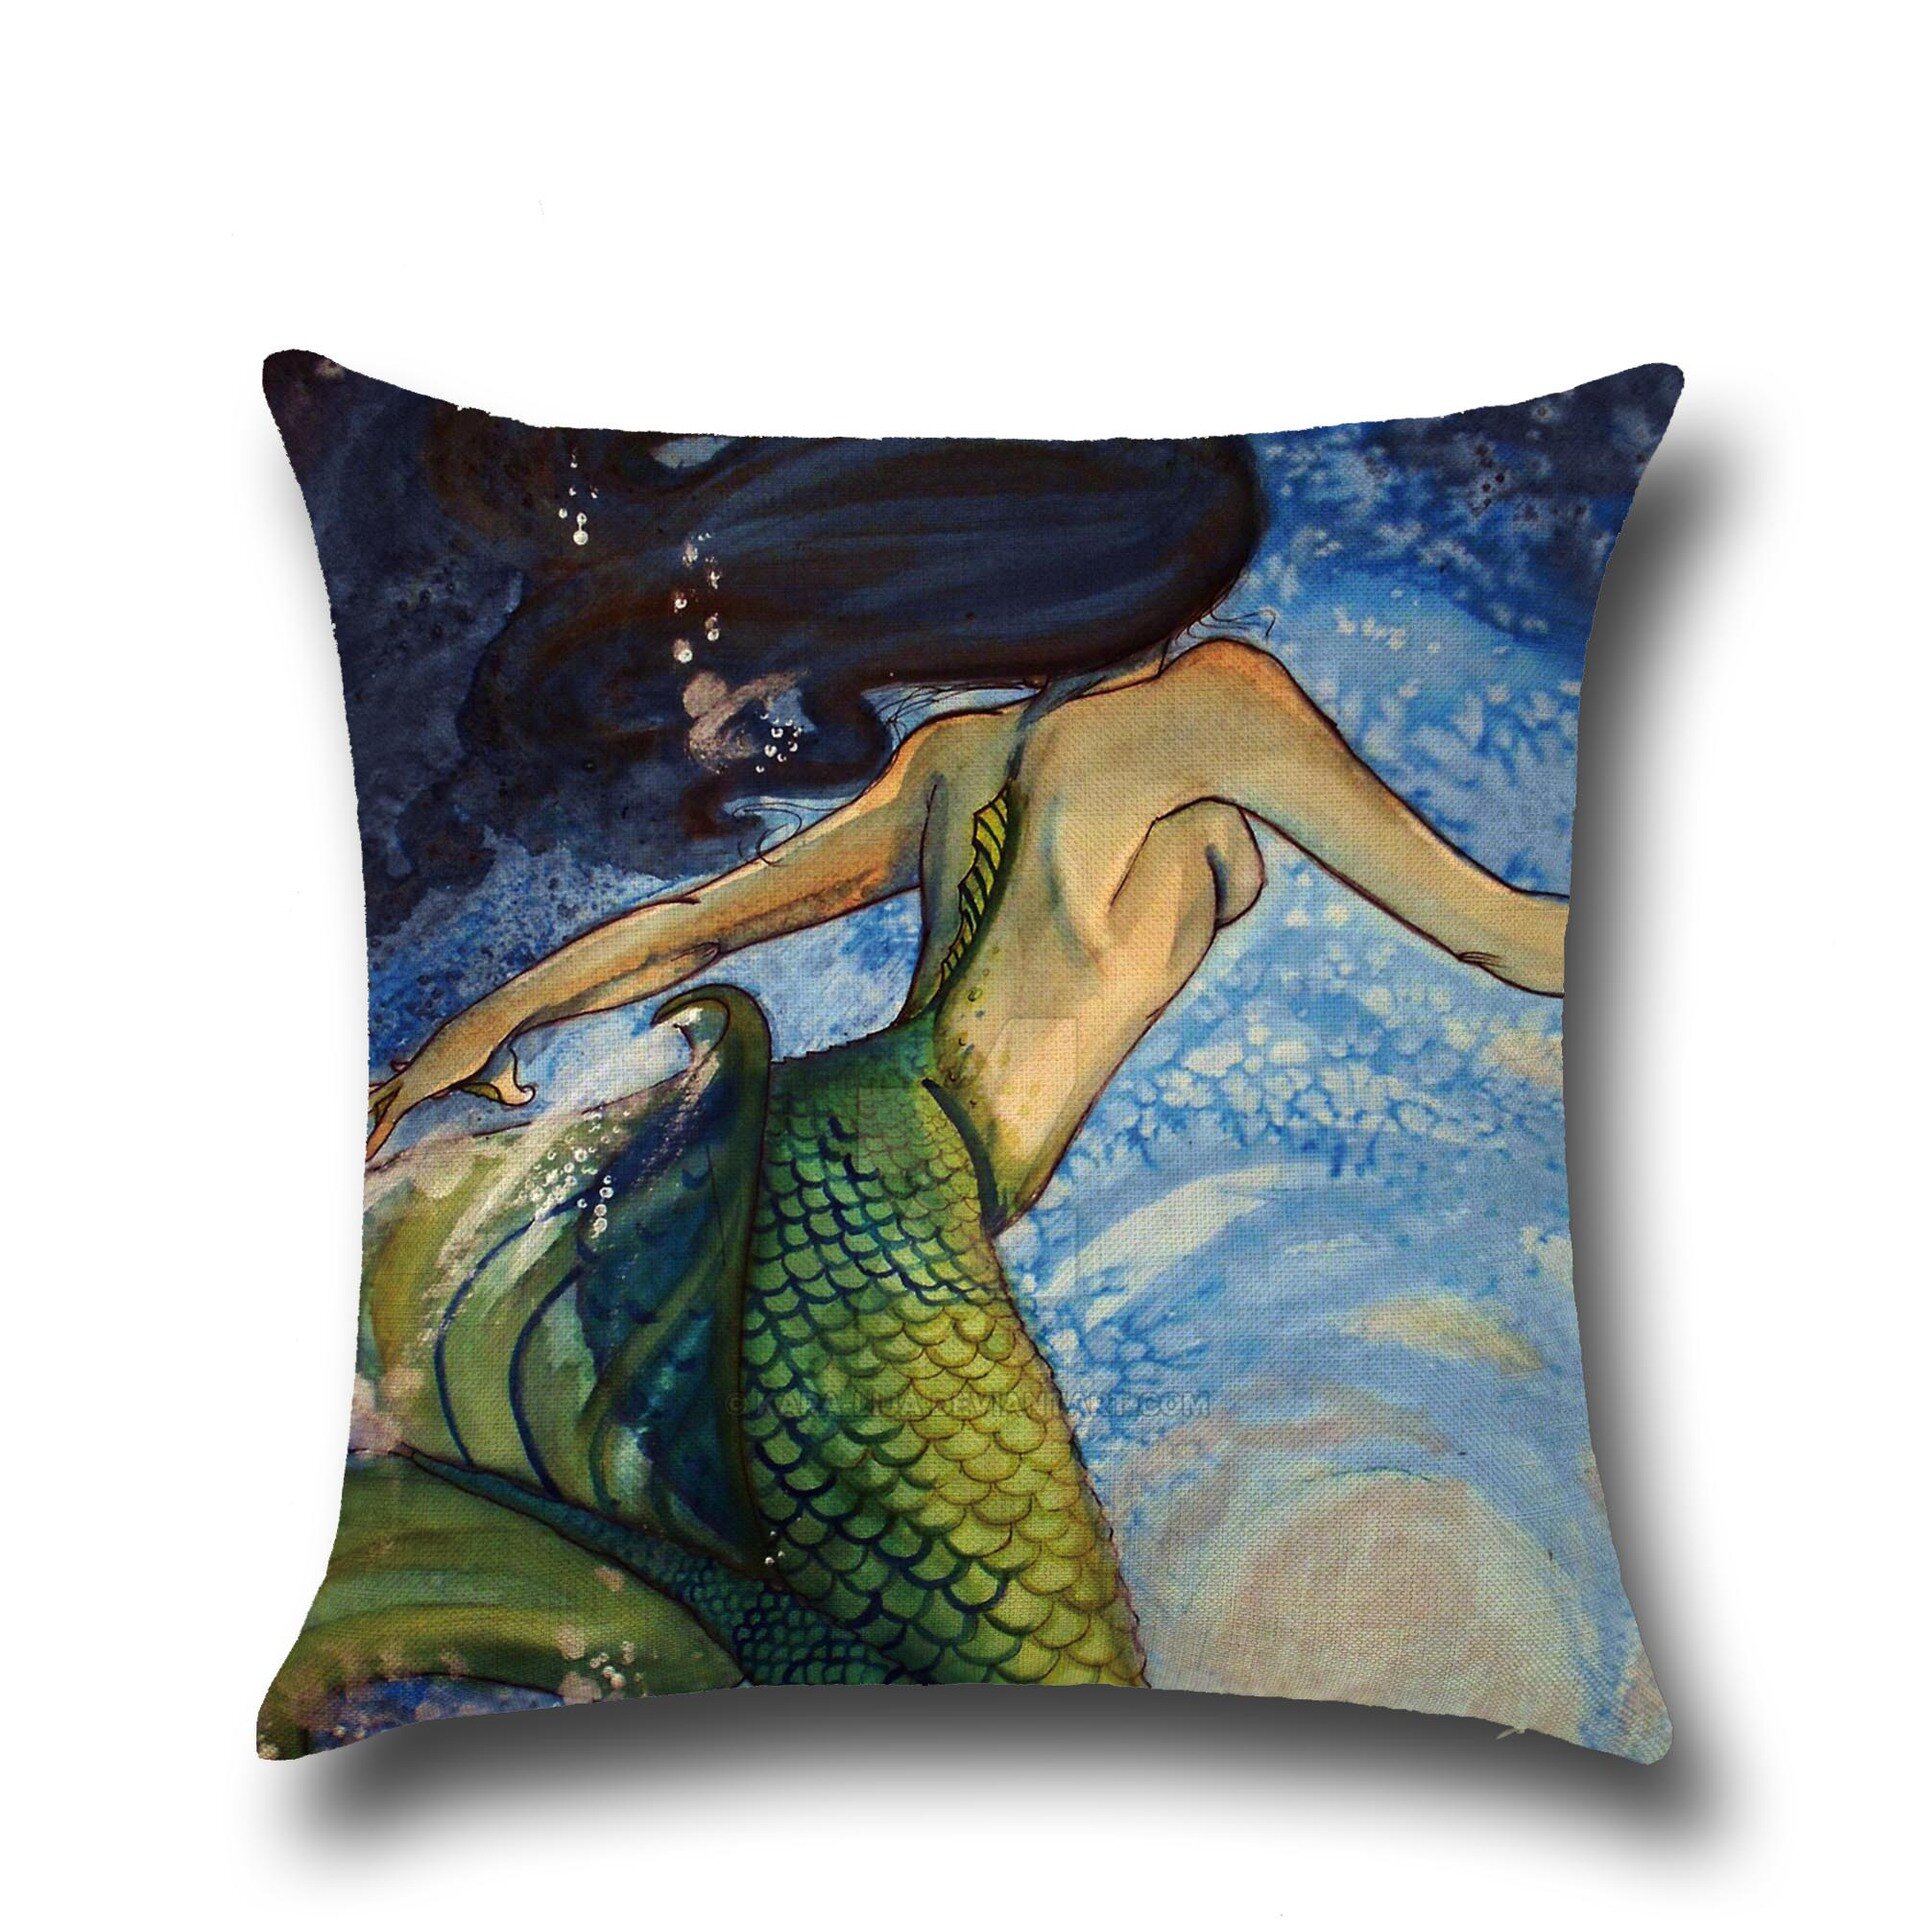 

Mermaid Style Linen Pillow Case Home Fabric Sofa Mediterranean Cushion Cover